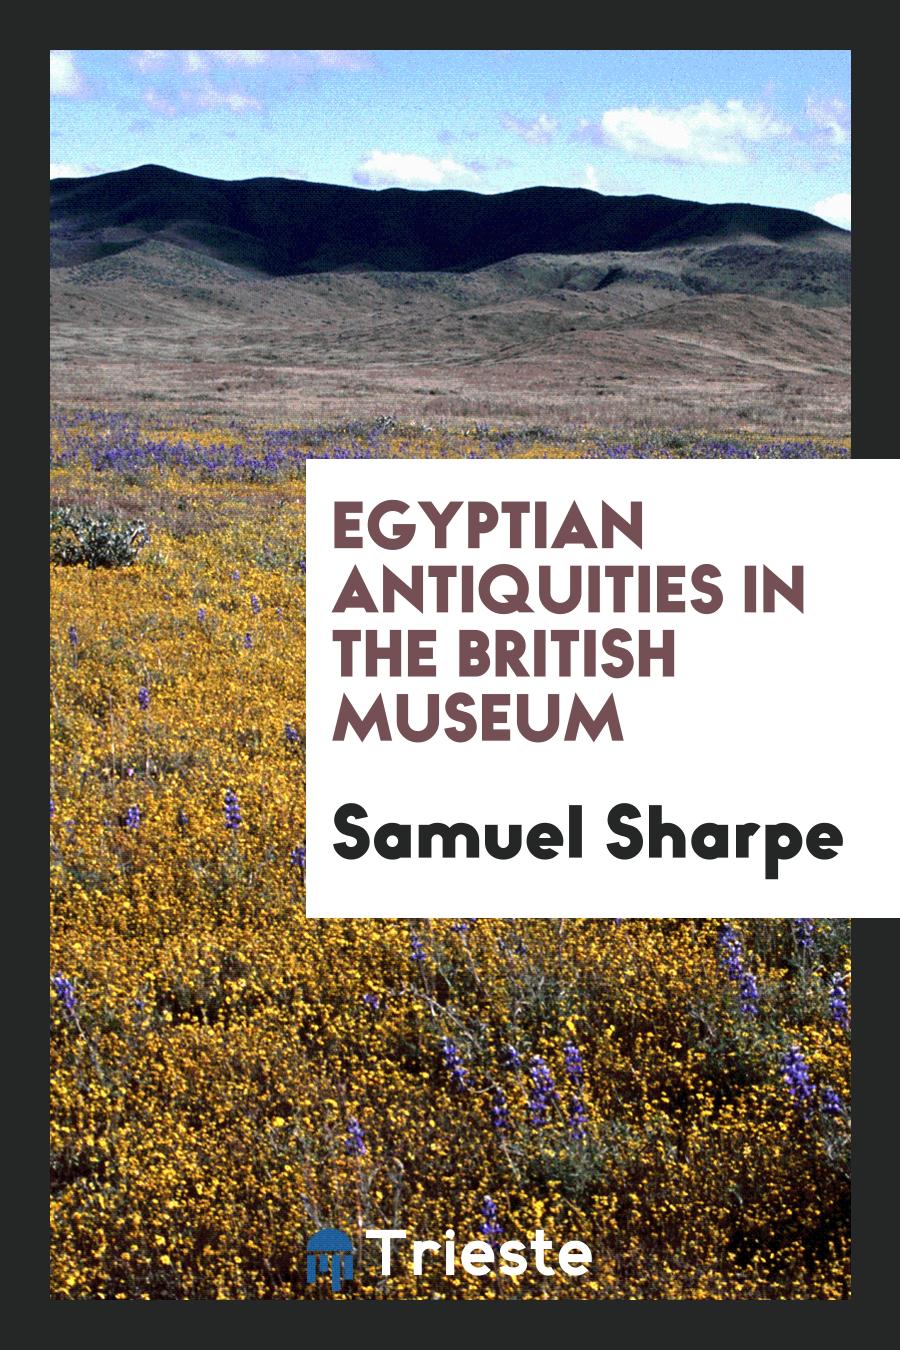 Samuel Sharpe - Egyptian Antiquities in the British Museum